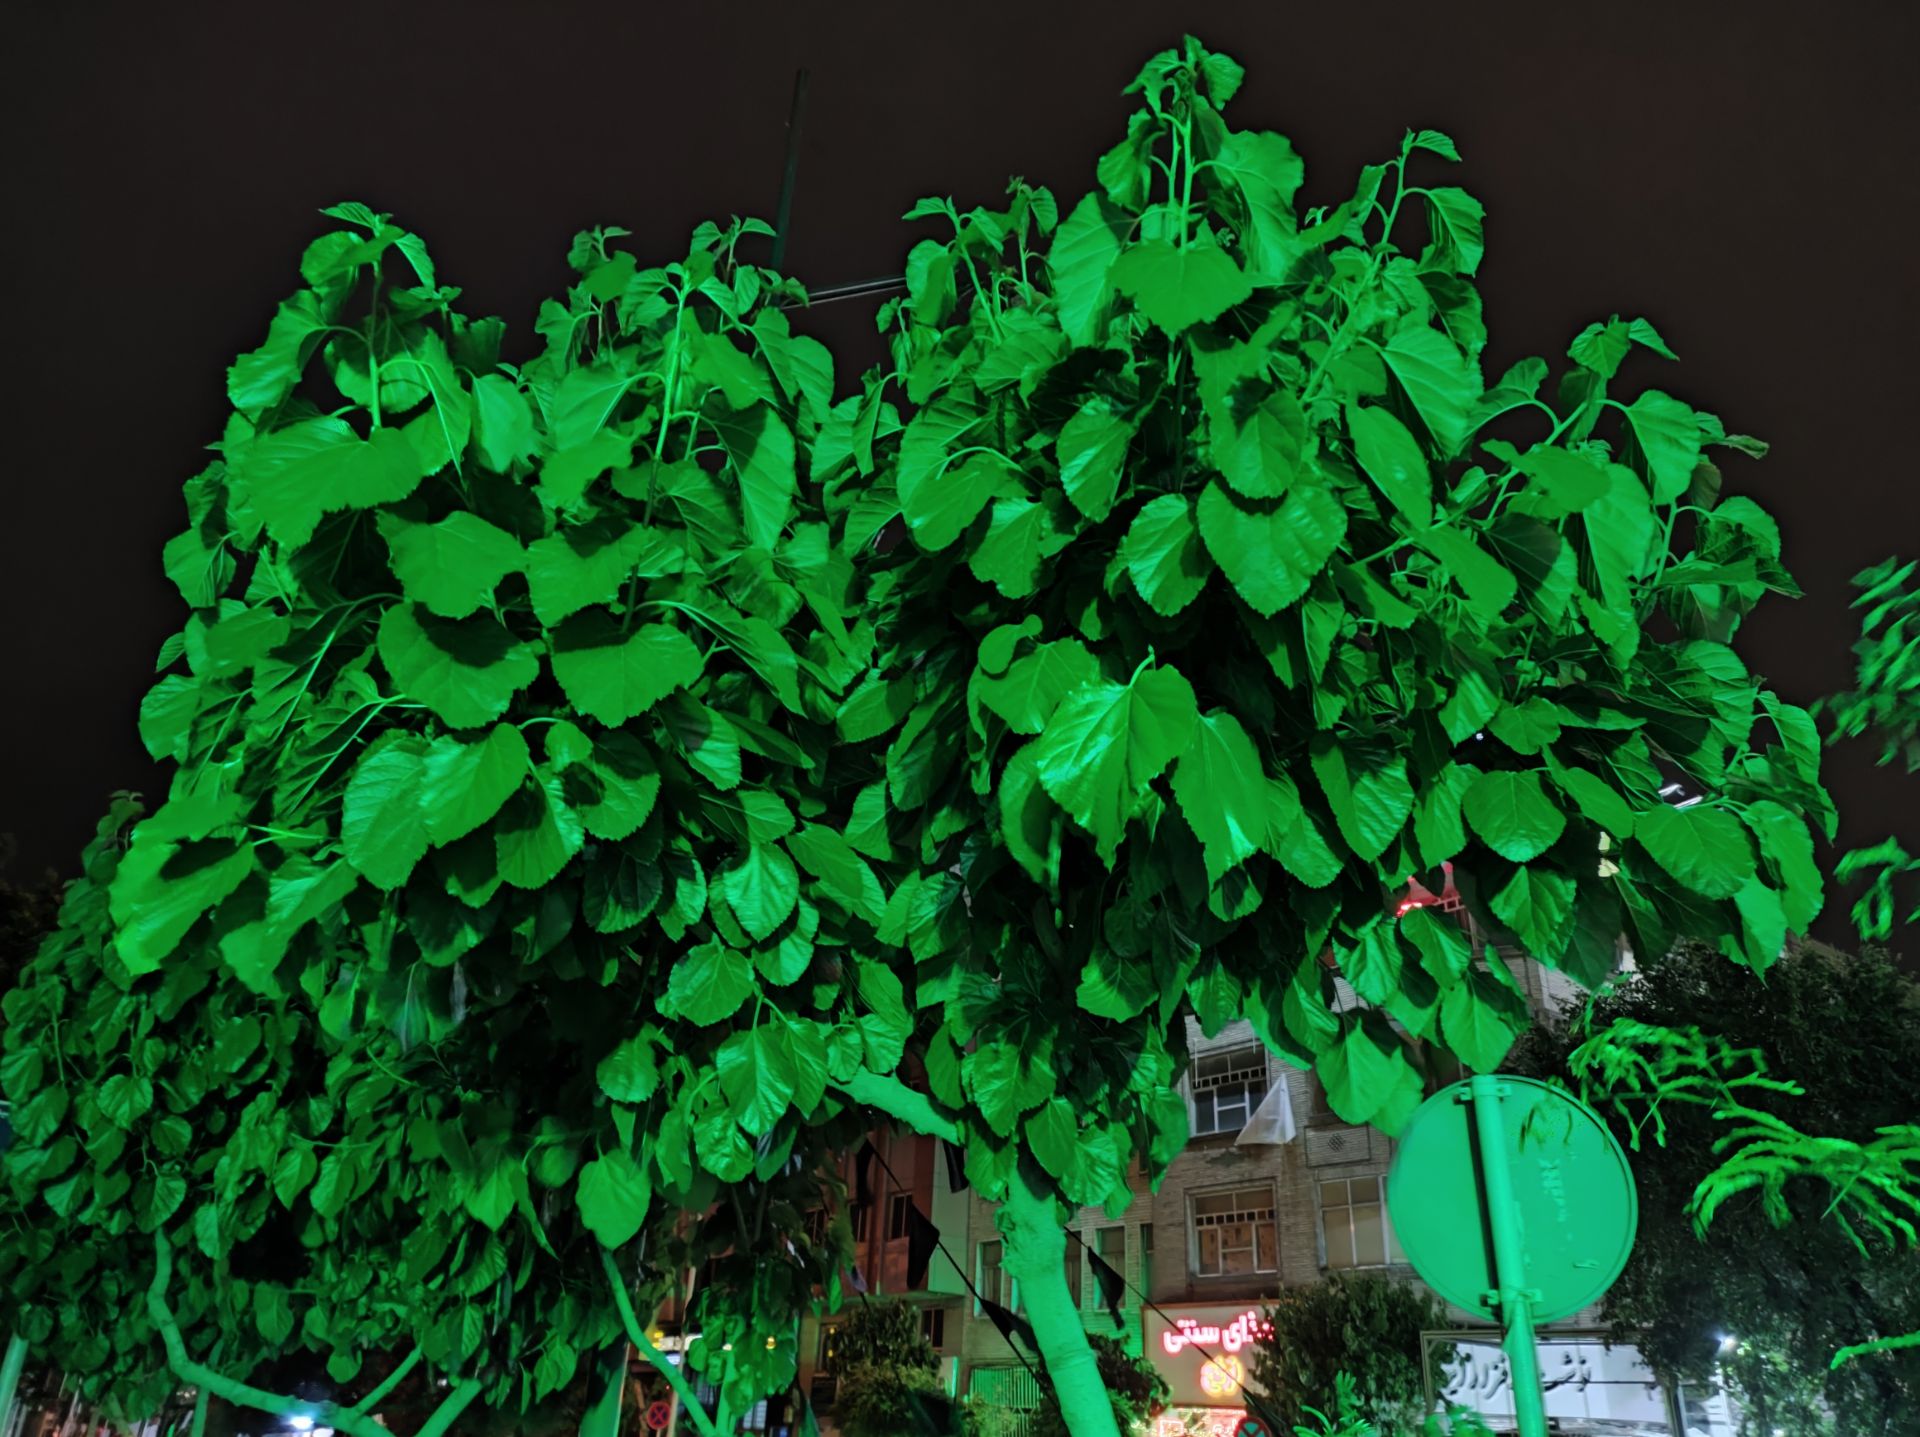 نمونه عکس دوربین اصلی می ۱۱ لایت در محیط تاریک - برگ های درختی در خیابان گلبرگ